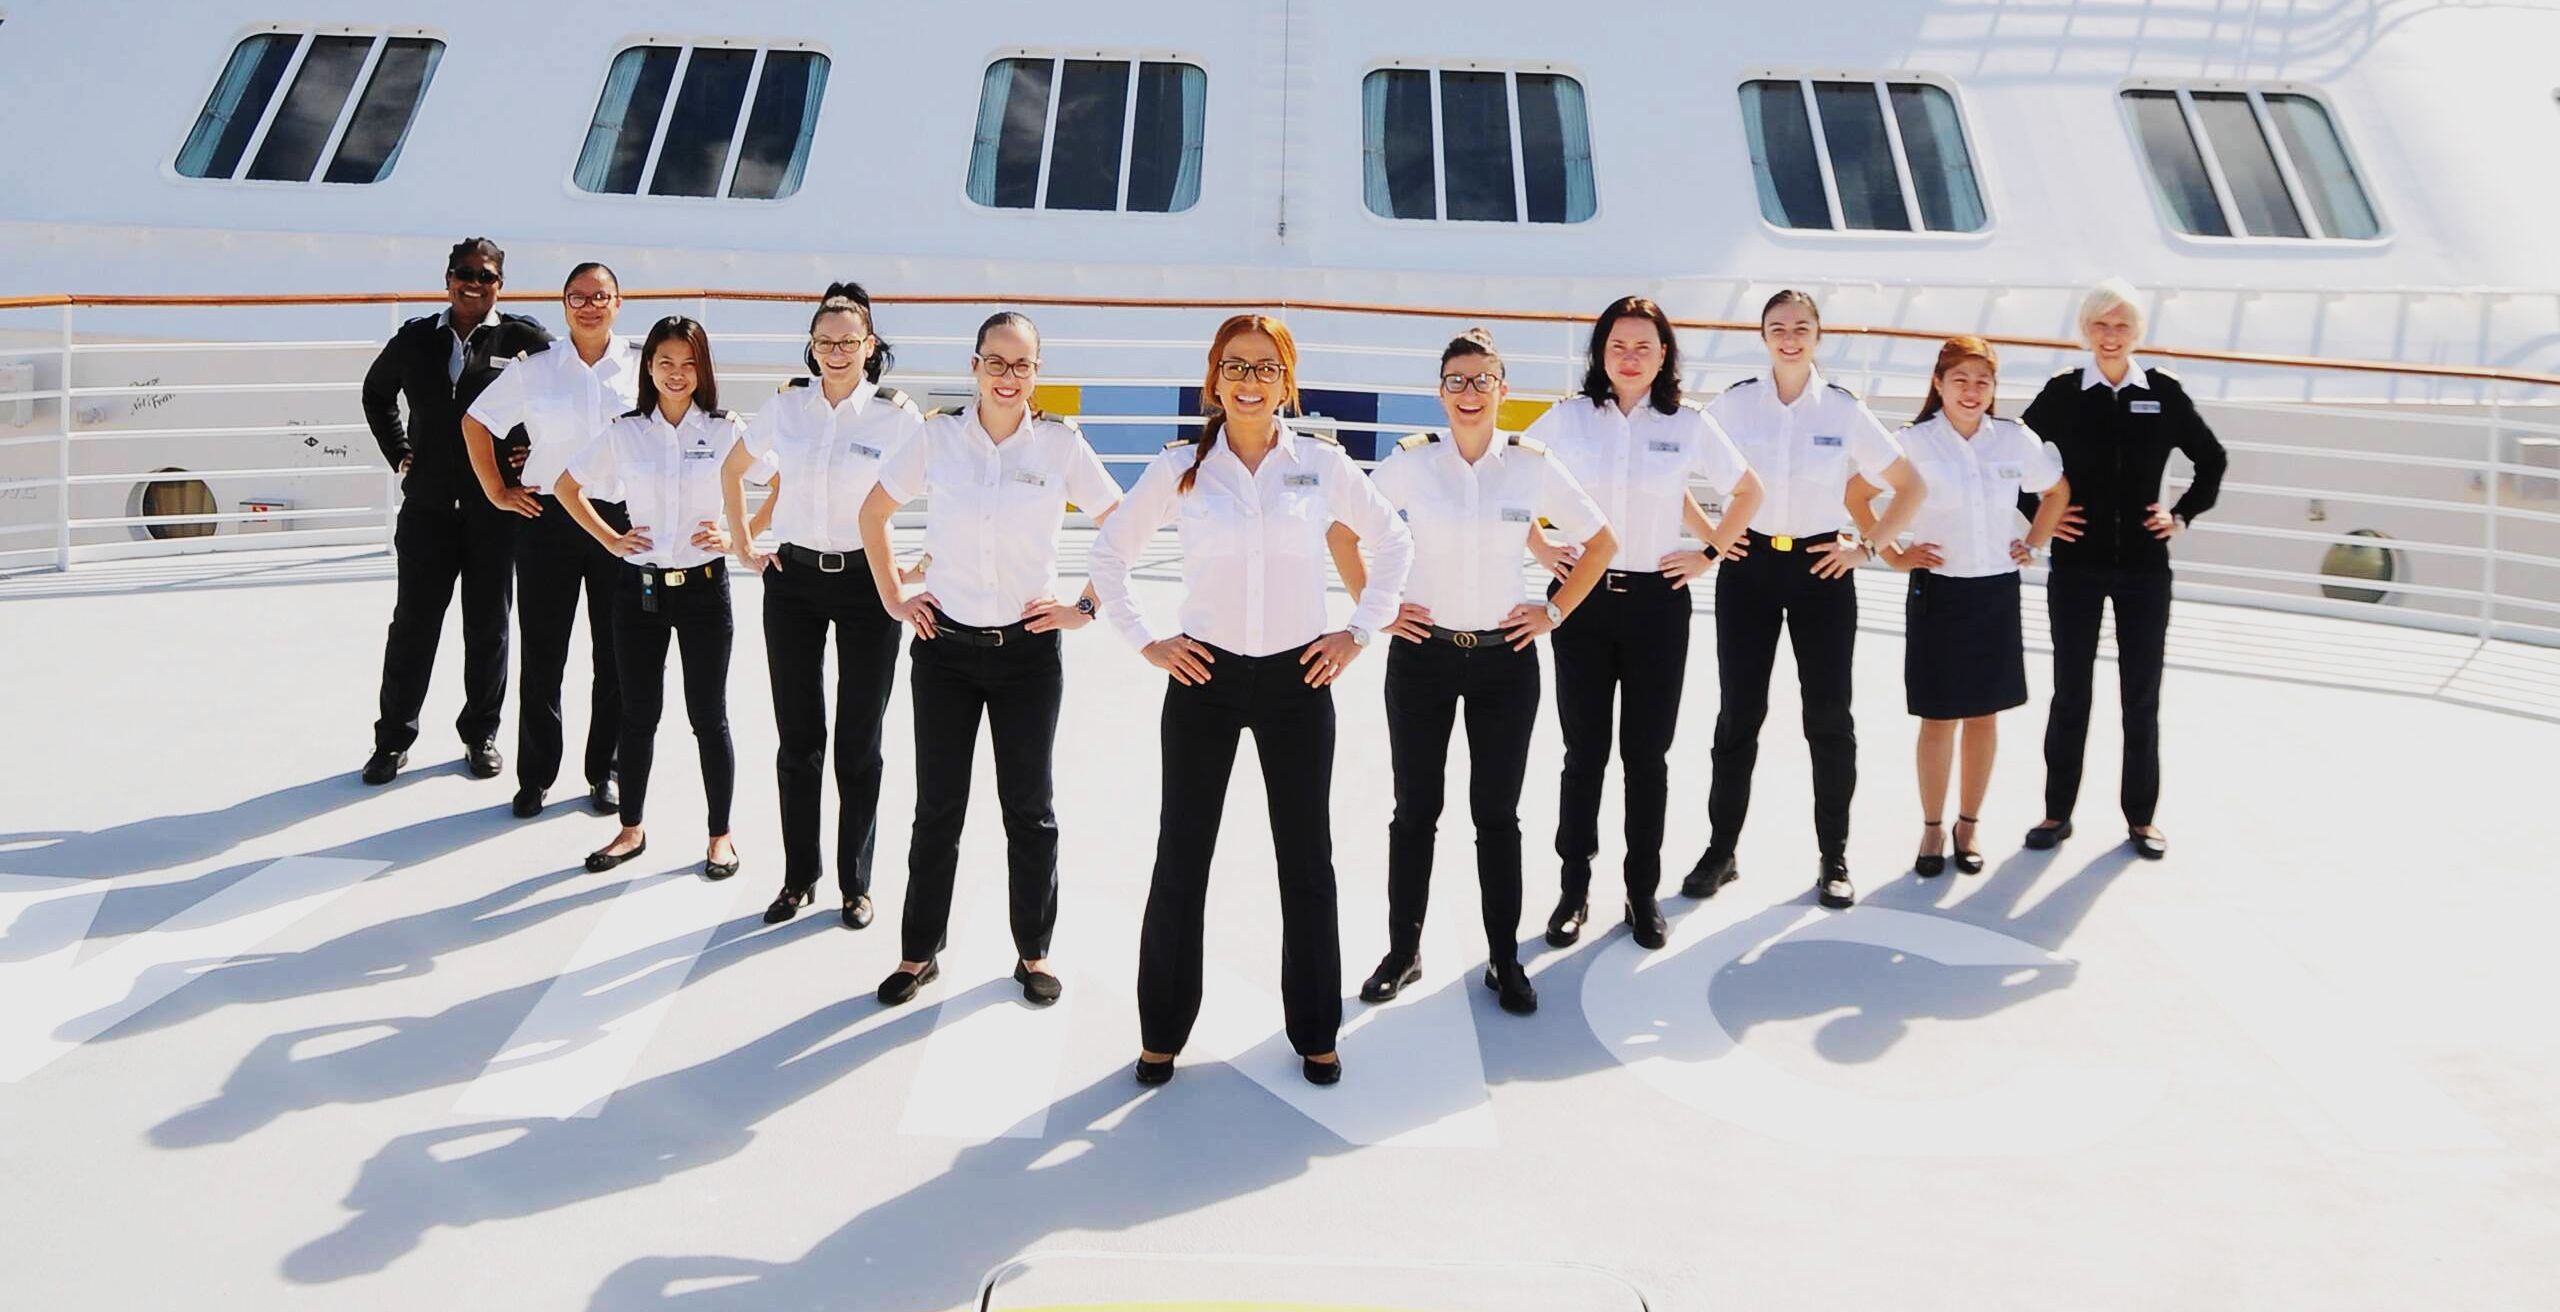 Tripulacao feminina de navio de cruzeiro embarcara no Dia Internacional